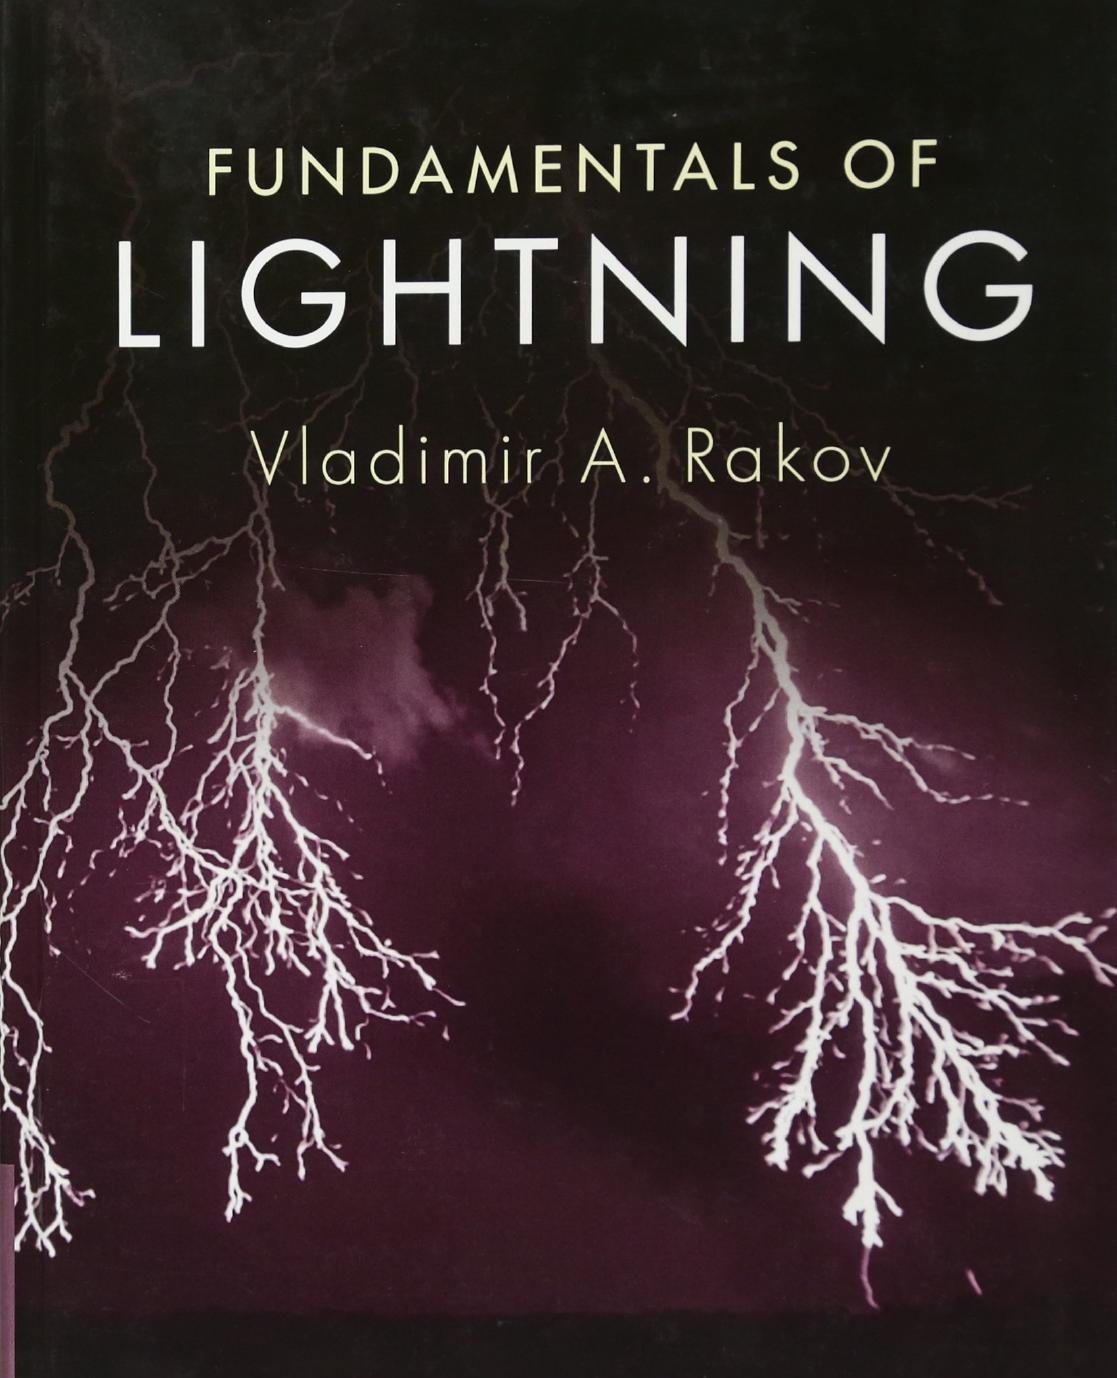 Fundamentals of Lightning 1st Edition by Vladimir A. Rakov 